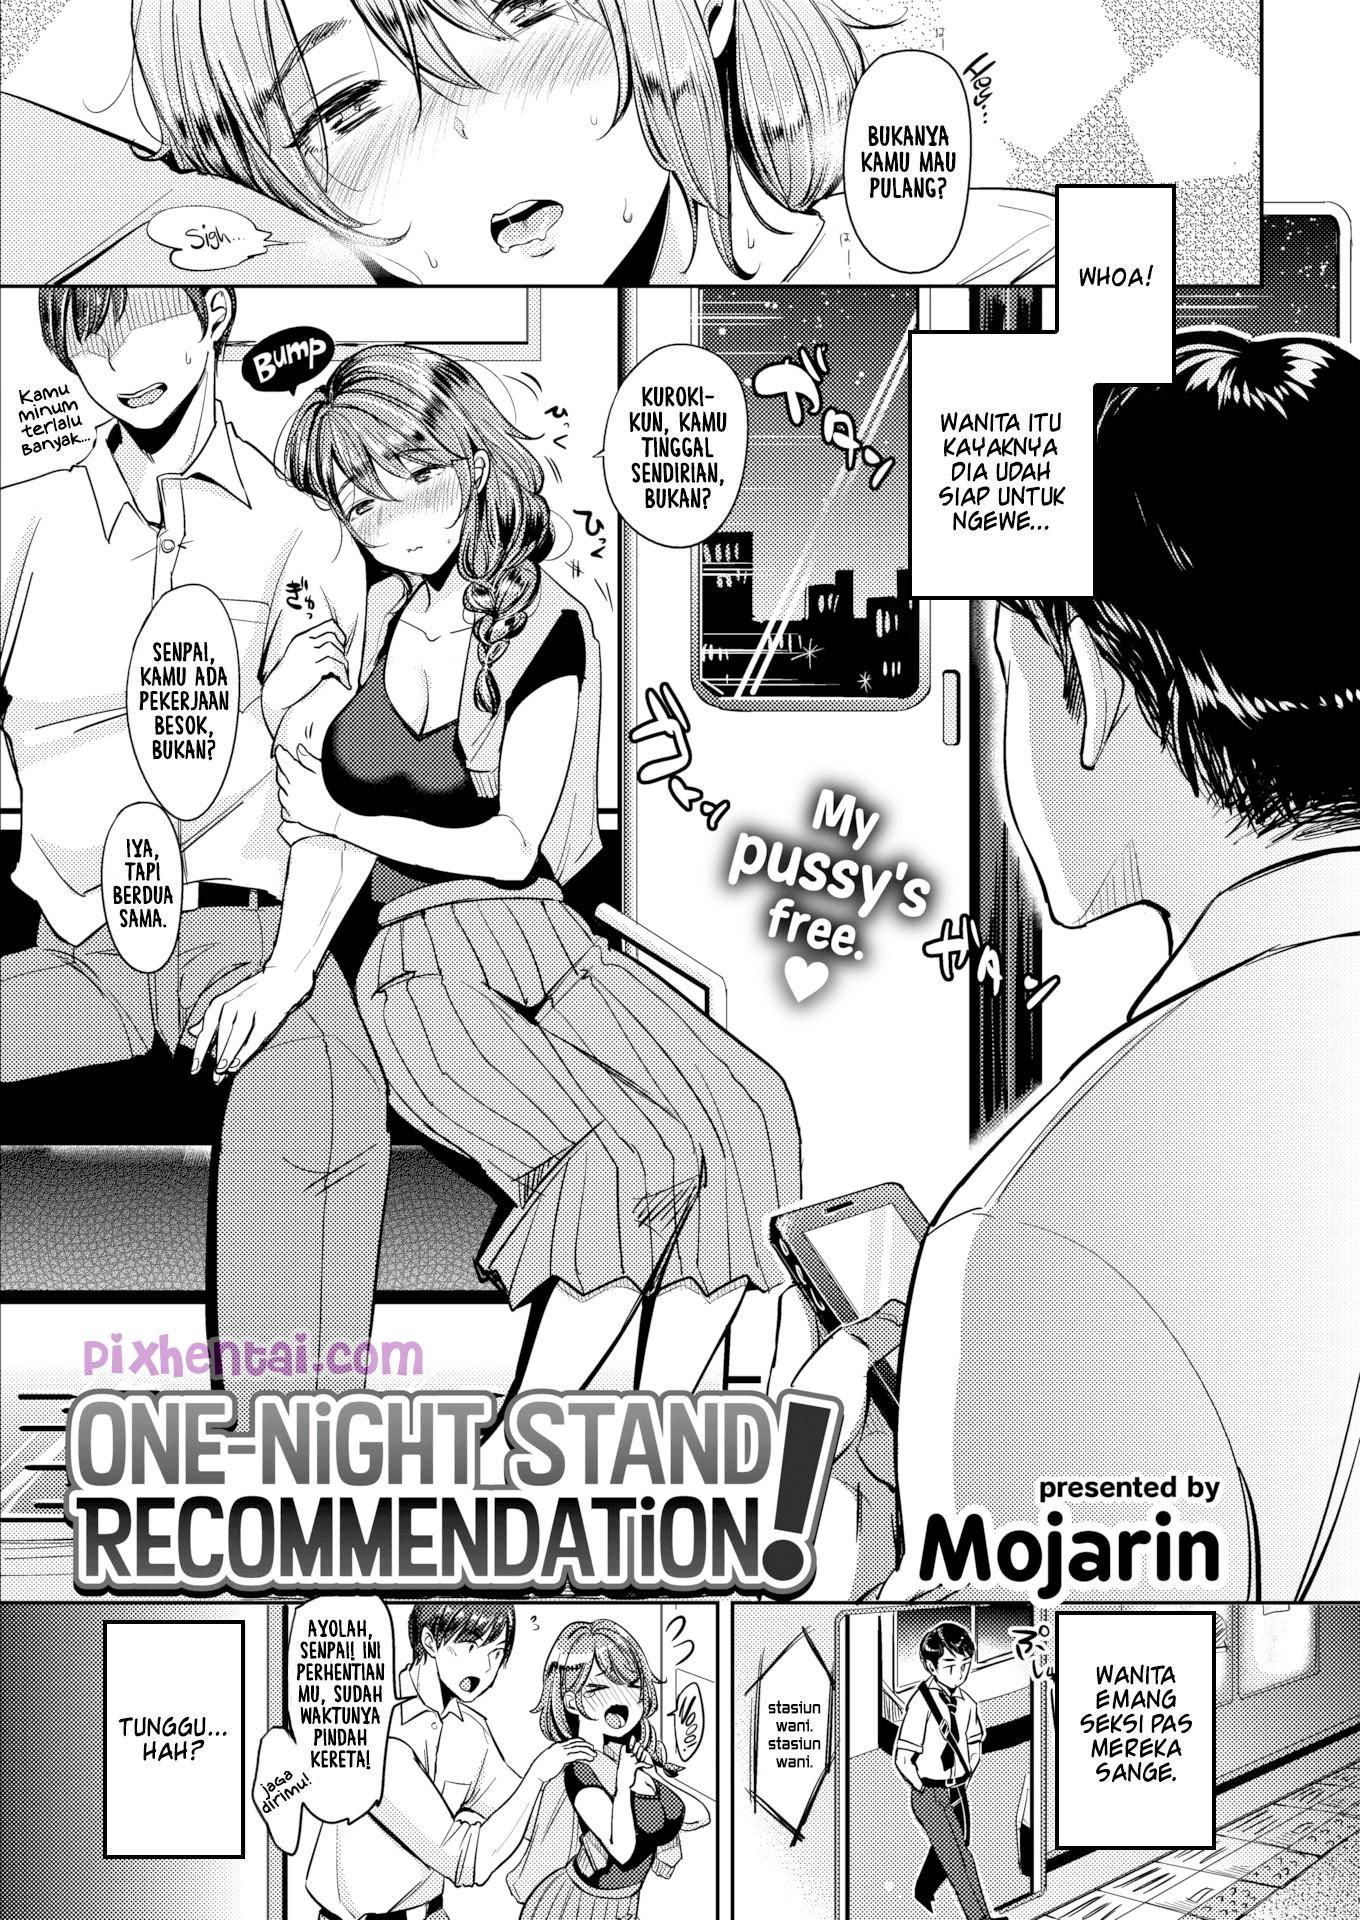 Komik hentai xxx manga sex bokep bawa cewek yang baru dikenal ke hotel 01.